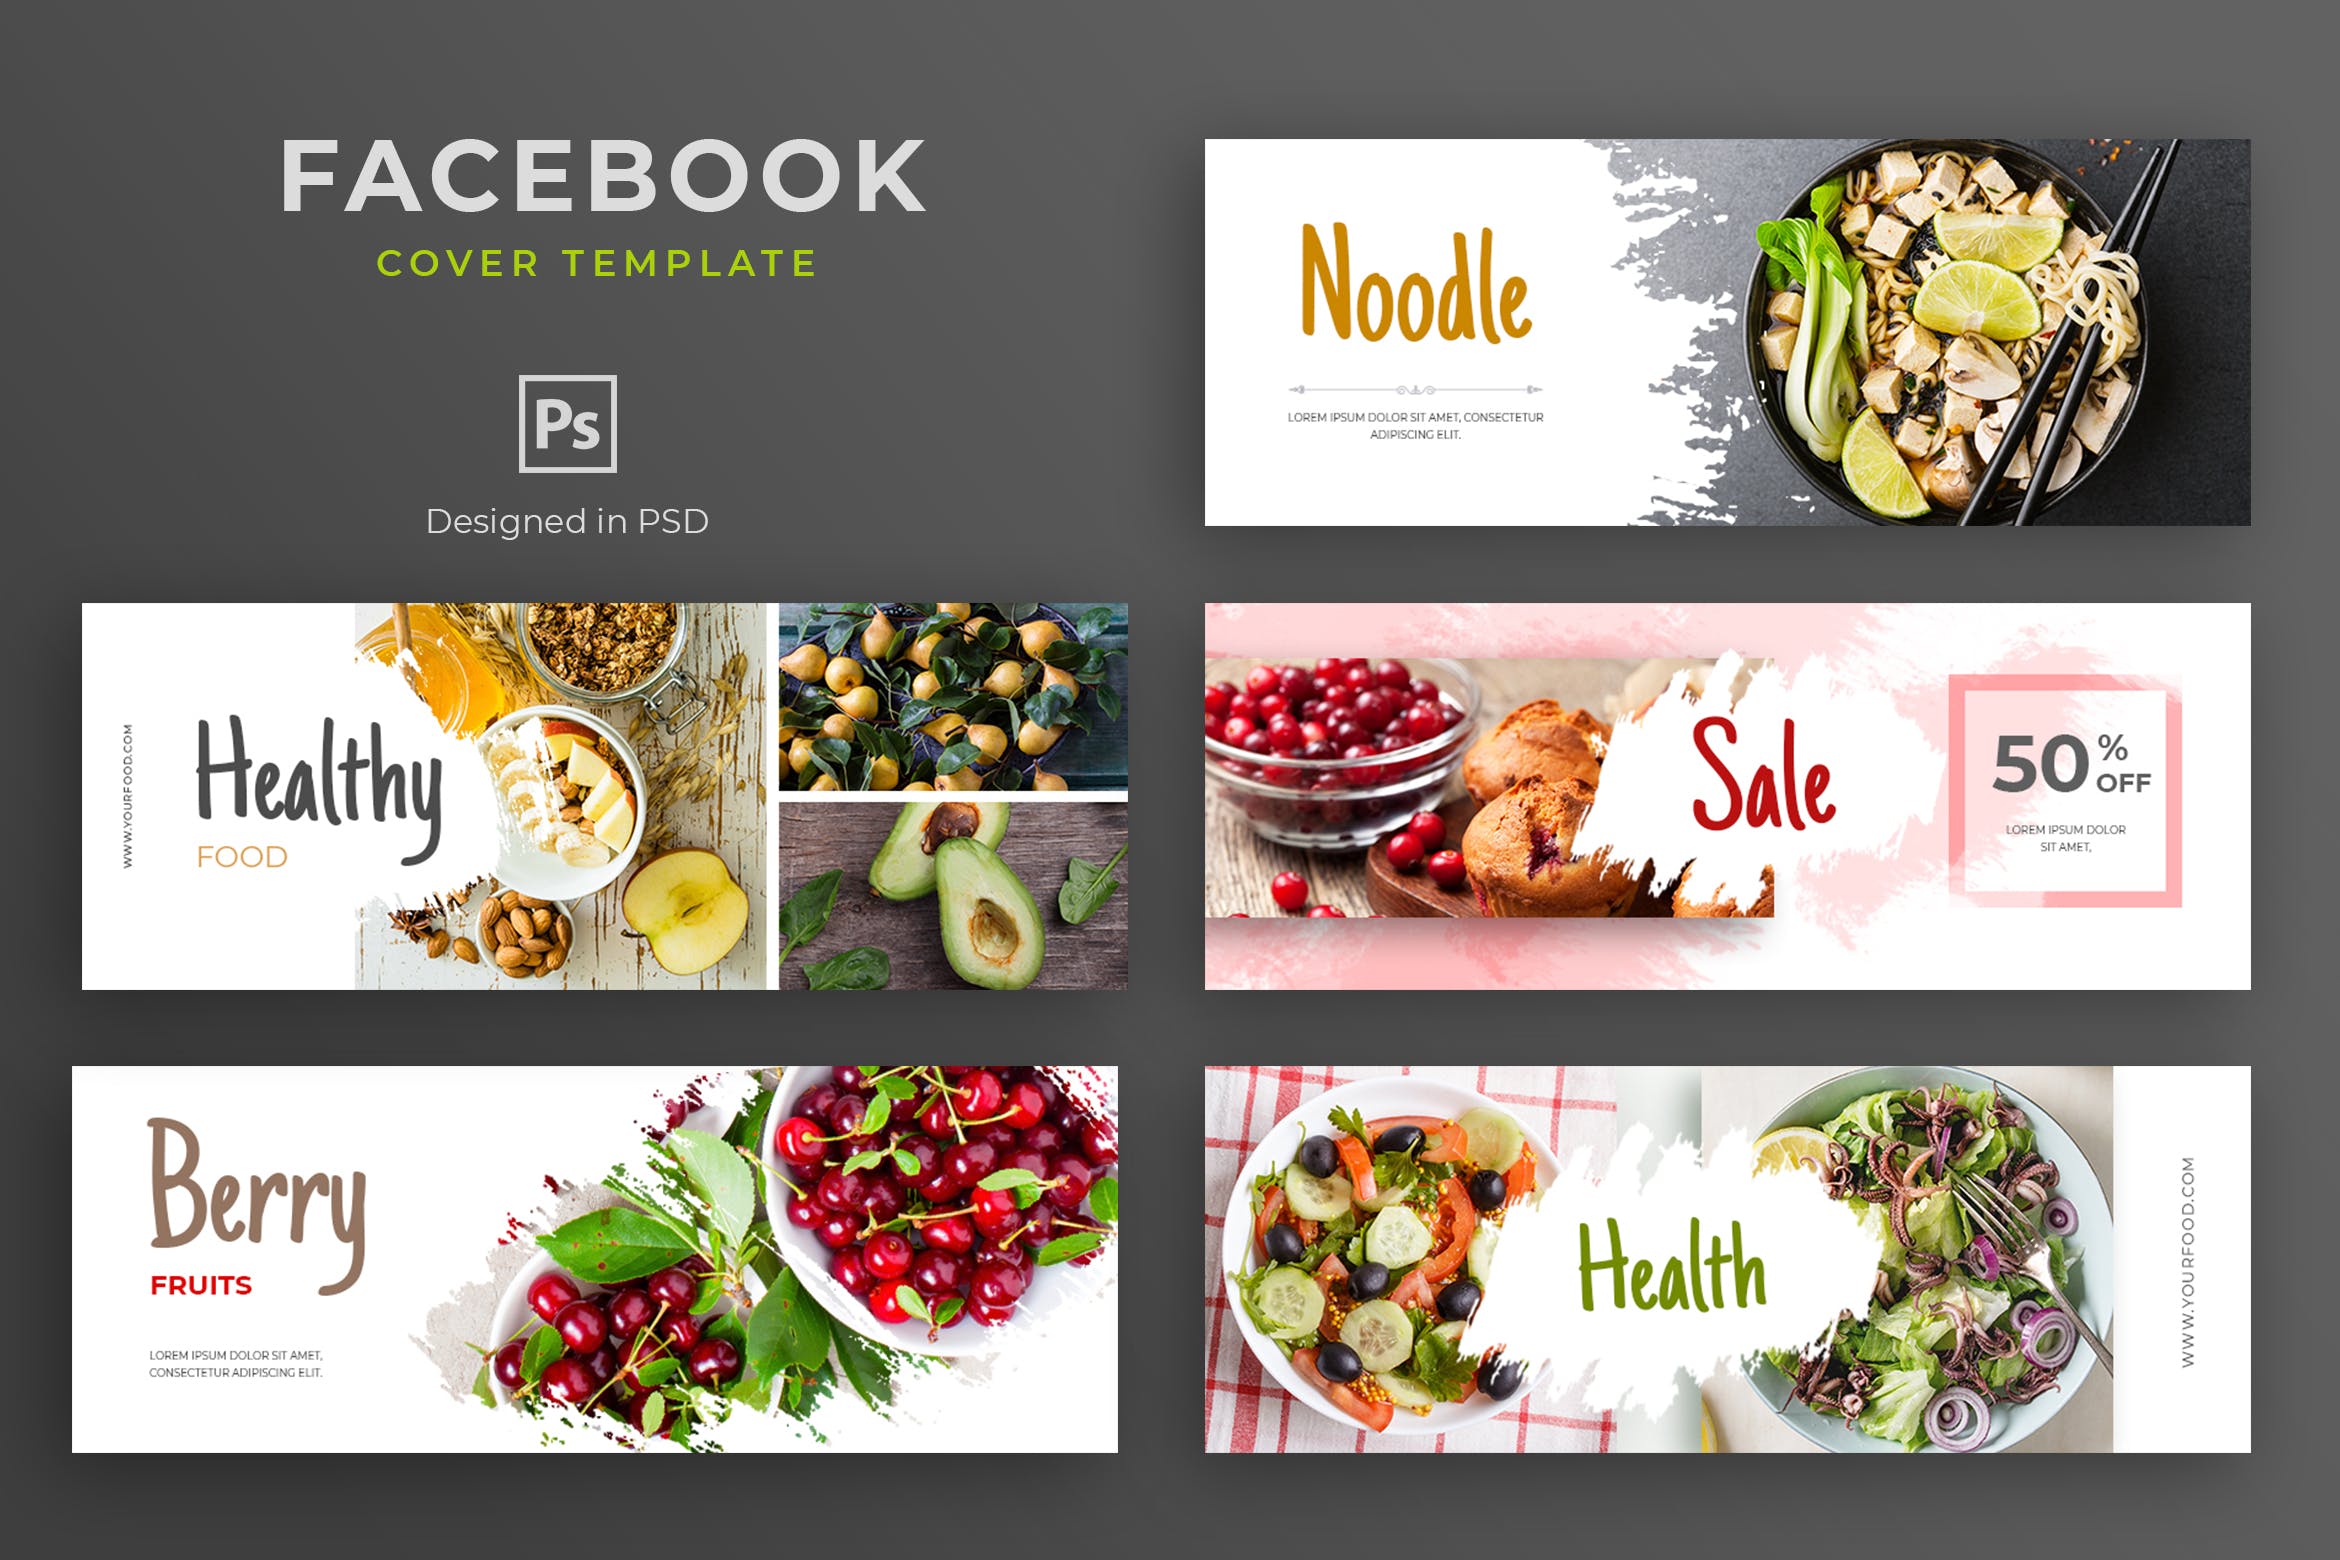 健康食物品牌推广Facebook主页封面设计模板第一素材精选 Healthy Food Facebook Cover Template插图